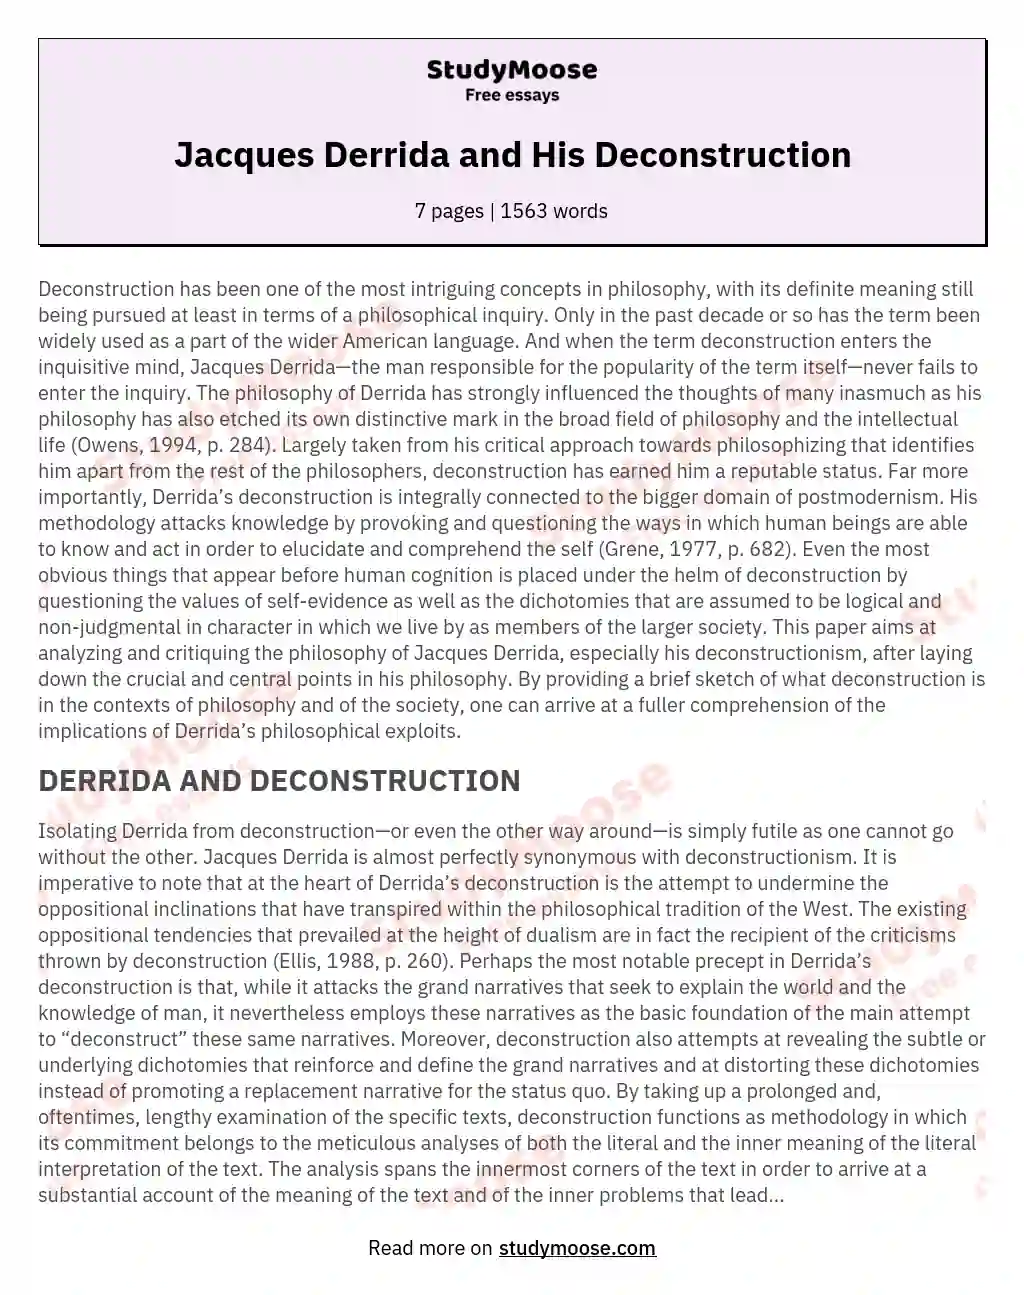 Jacques Derrida and His Deconstruction essay